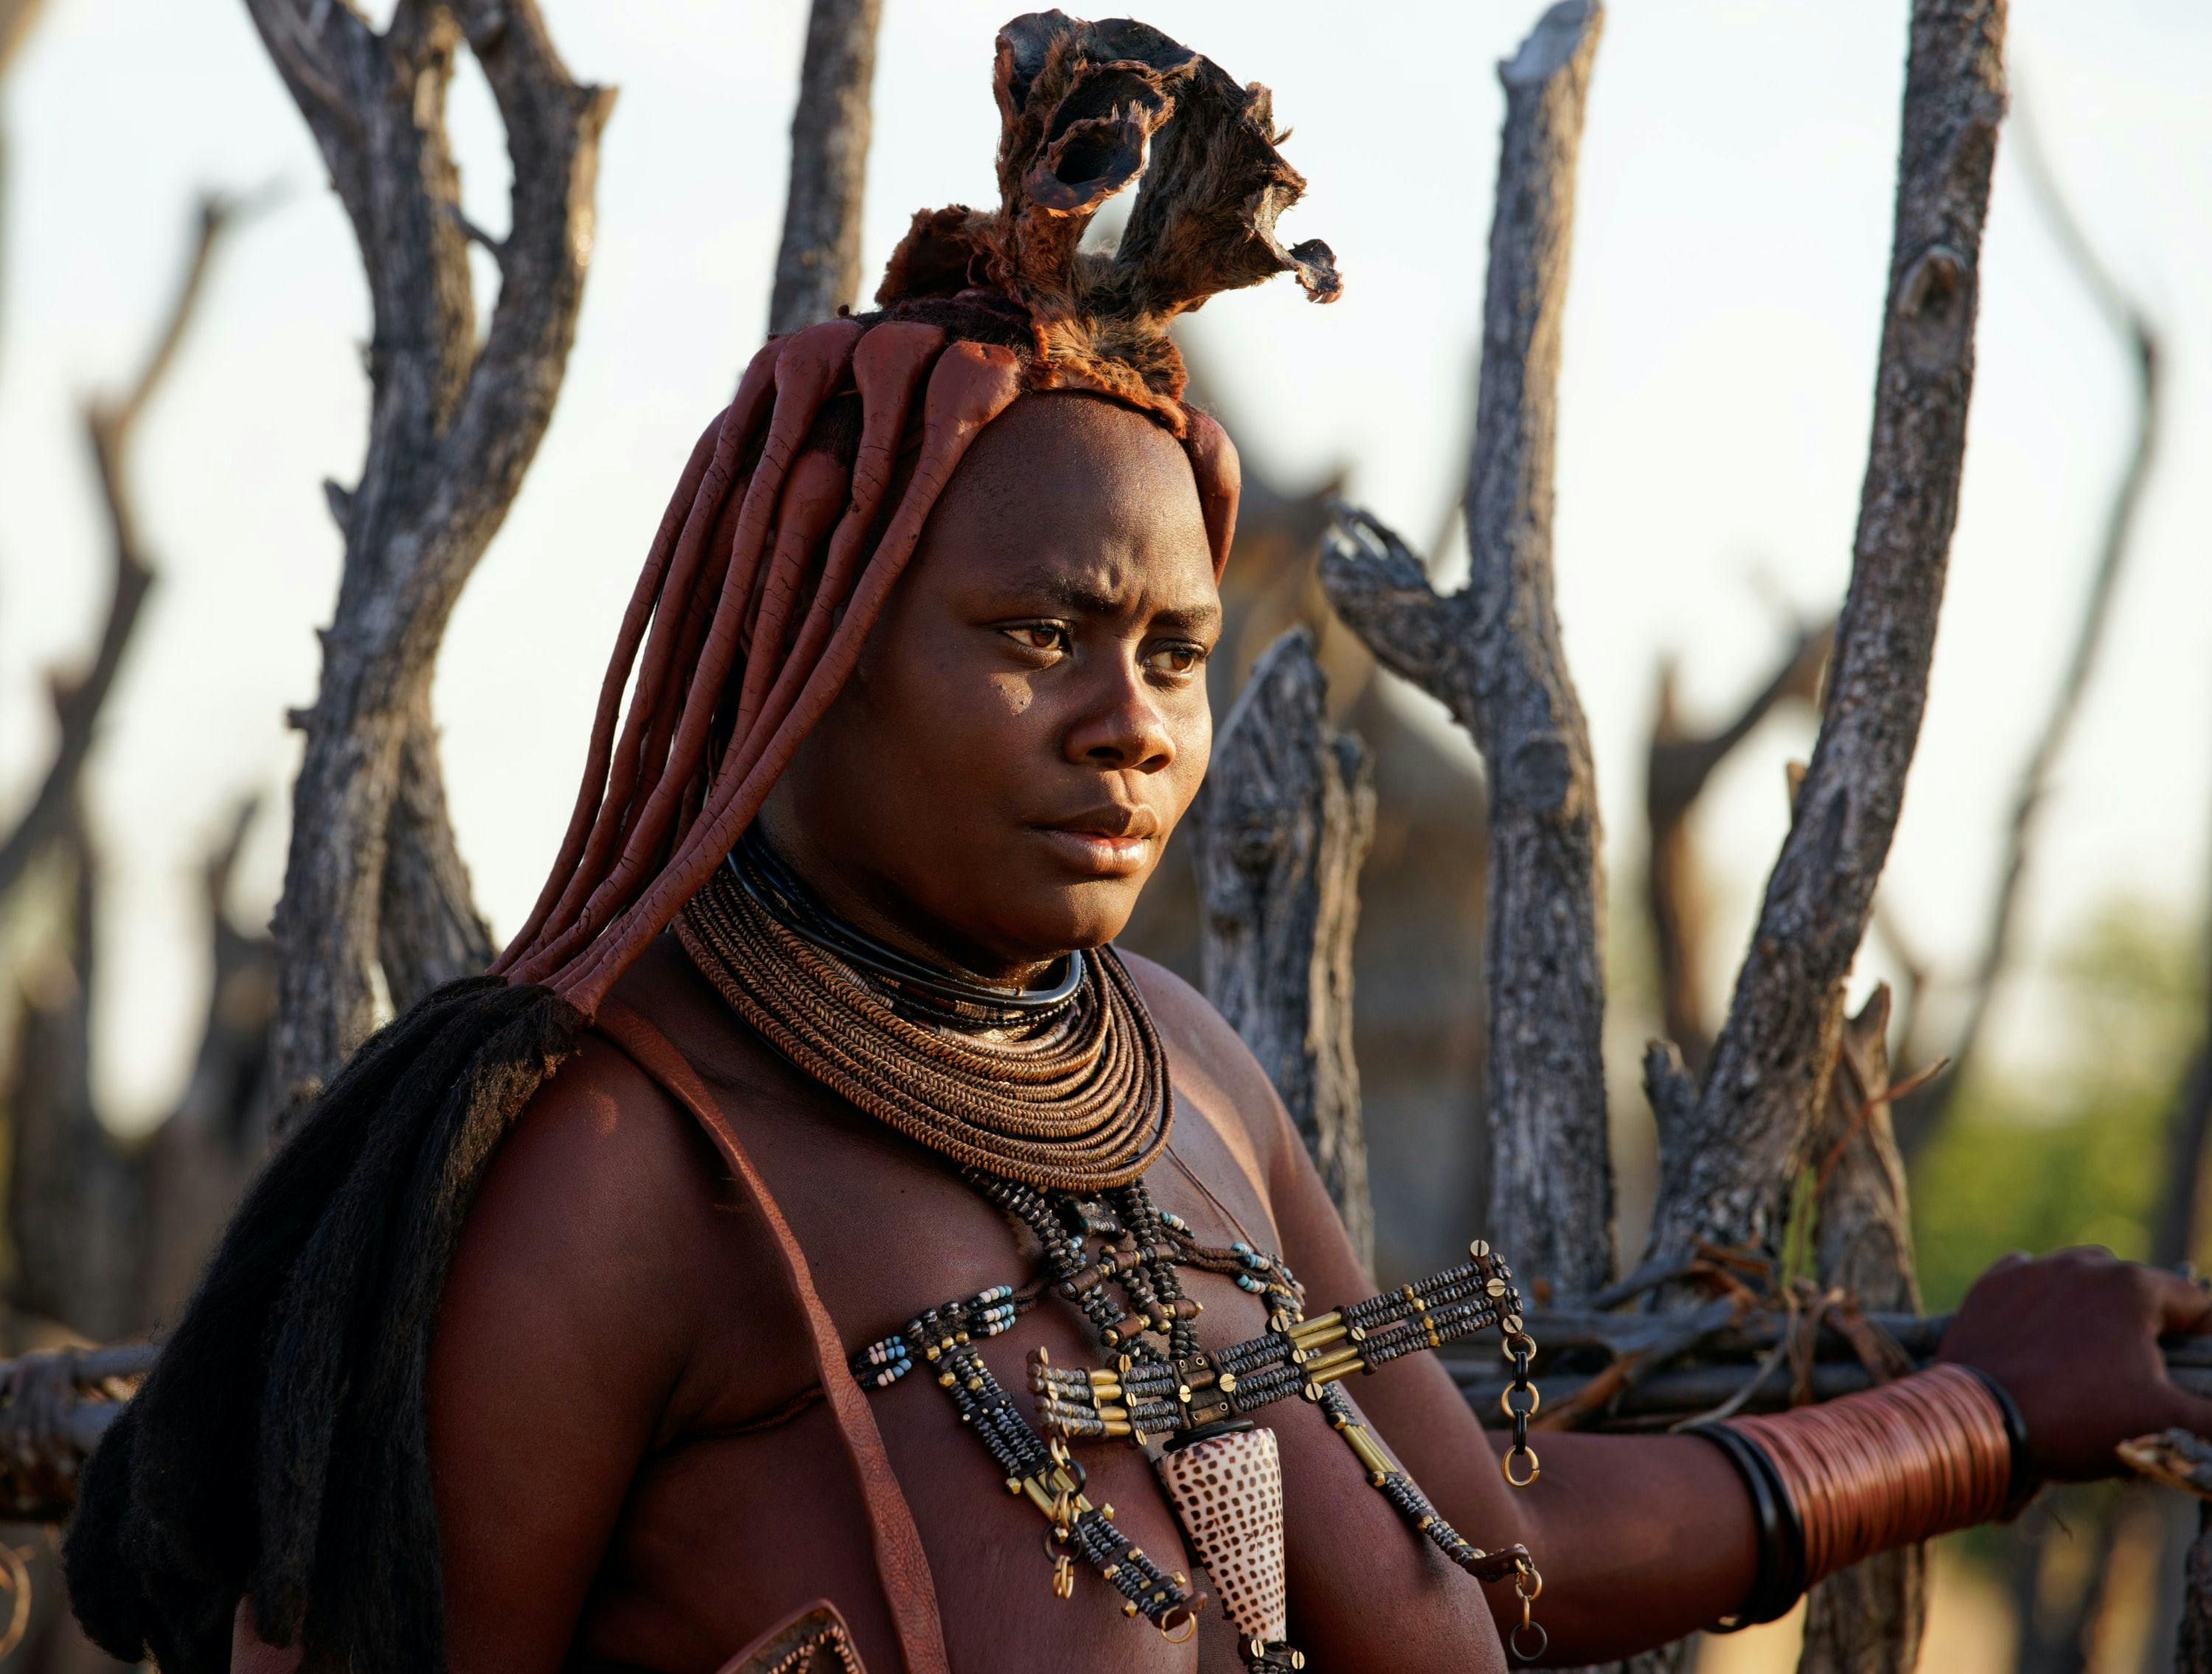 Himba woman in Namibia.